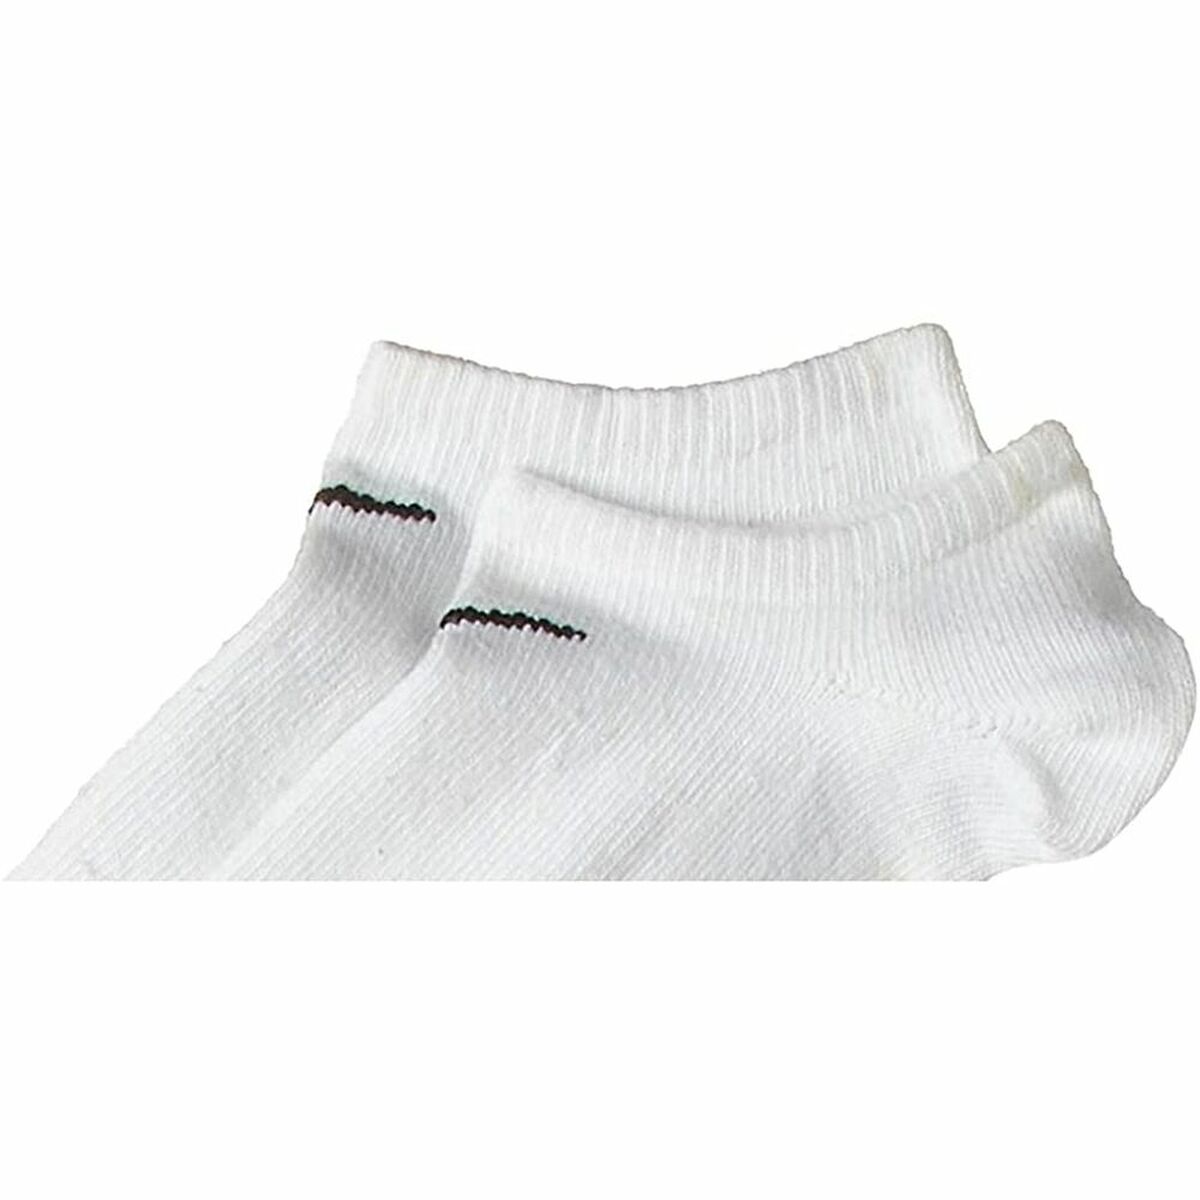 Socks Nike SX2554-101 White/Black XL - buy, price, in Estonia | sellme.ee